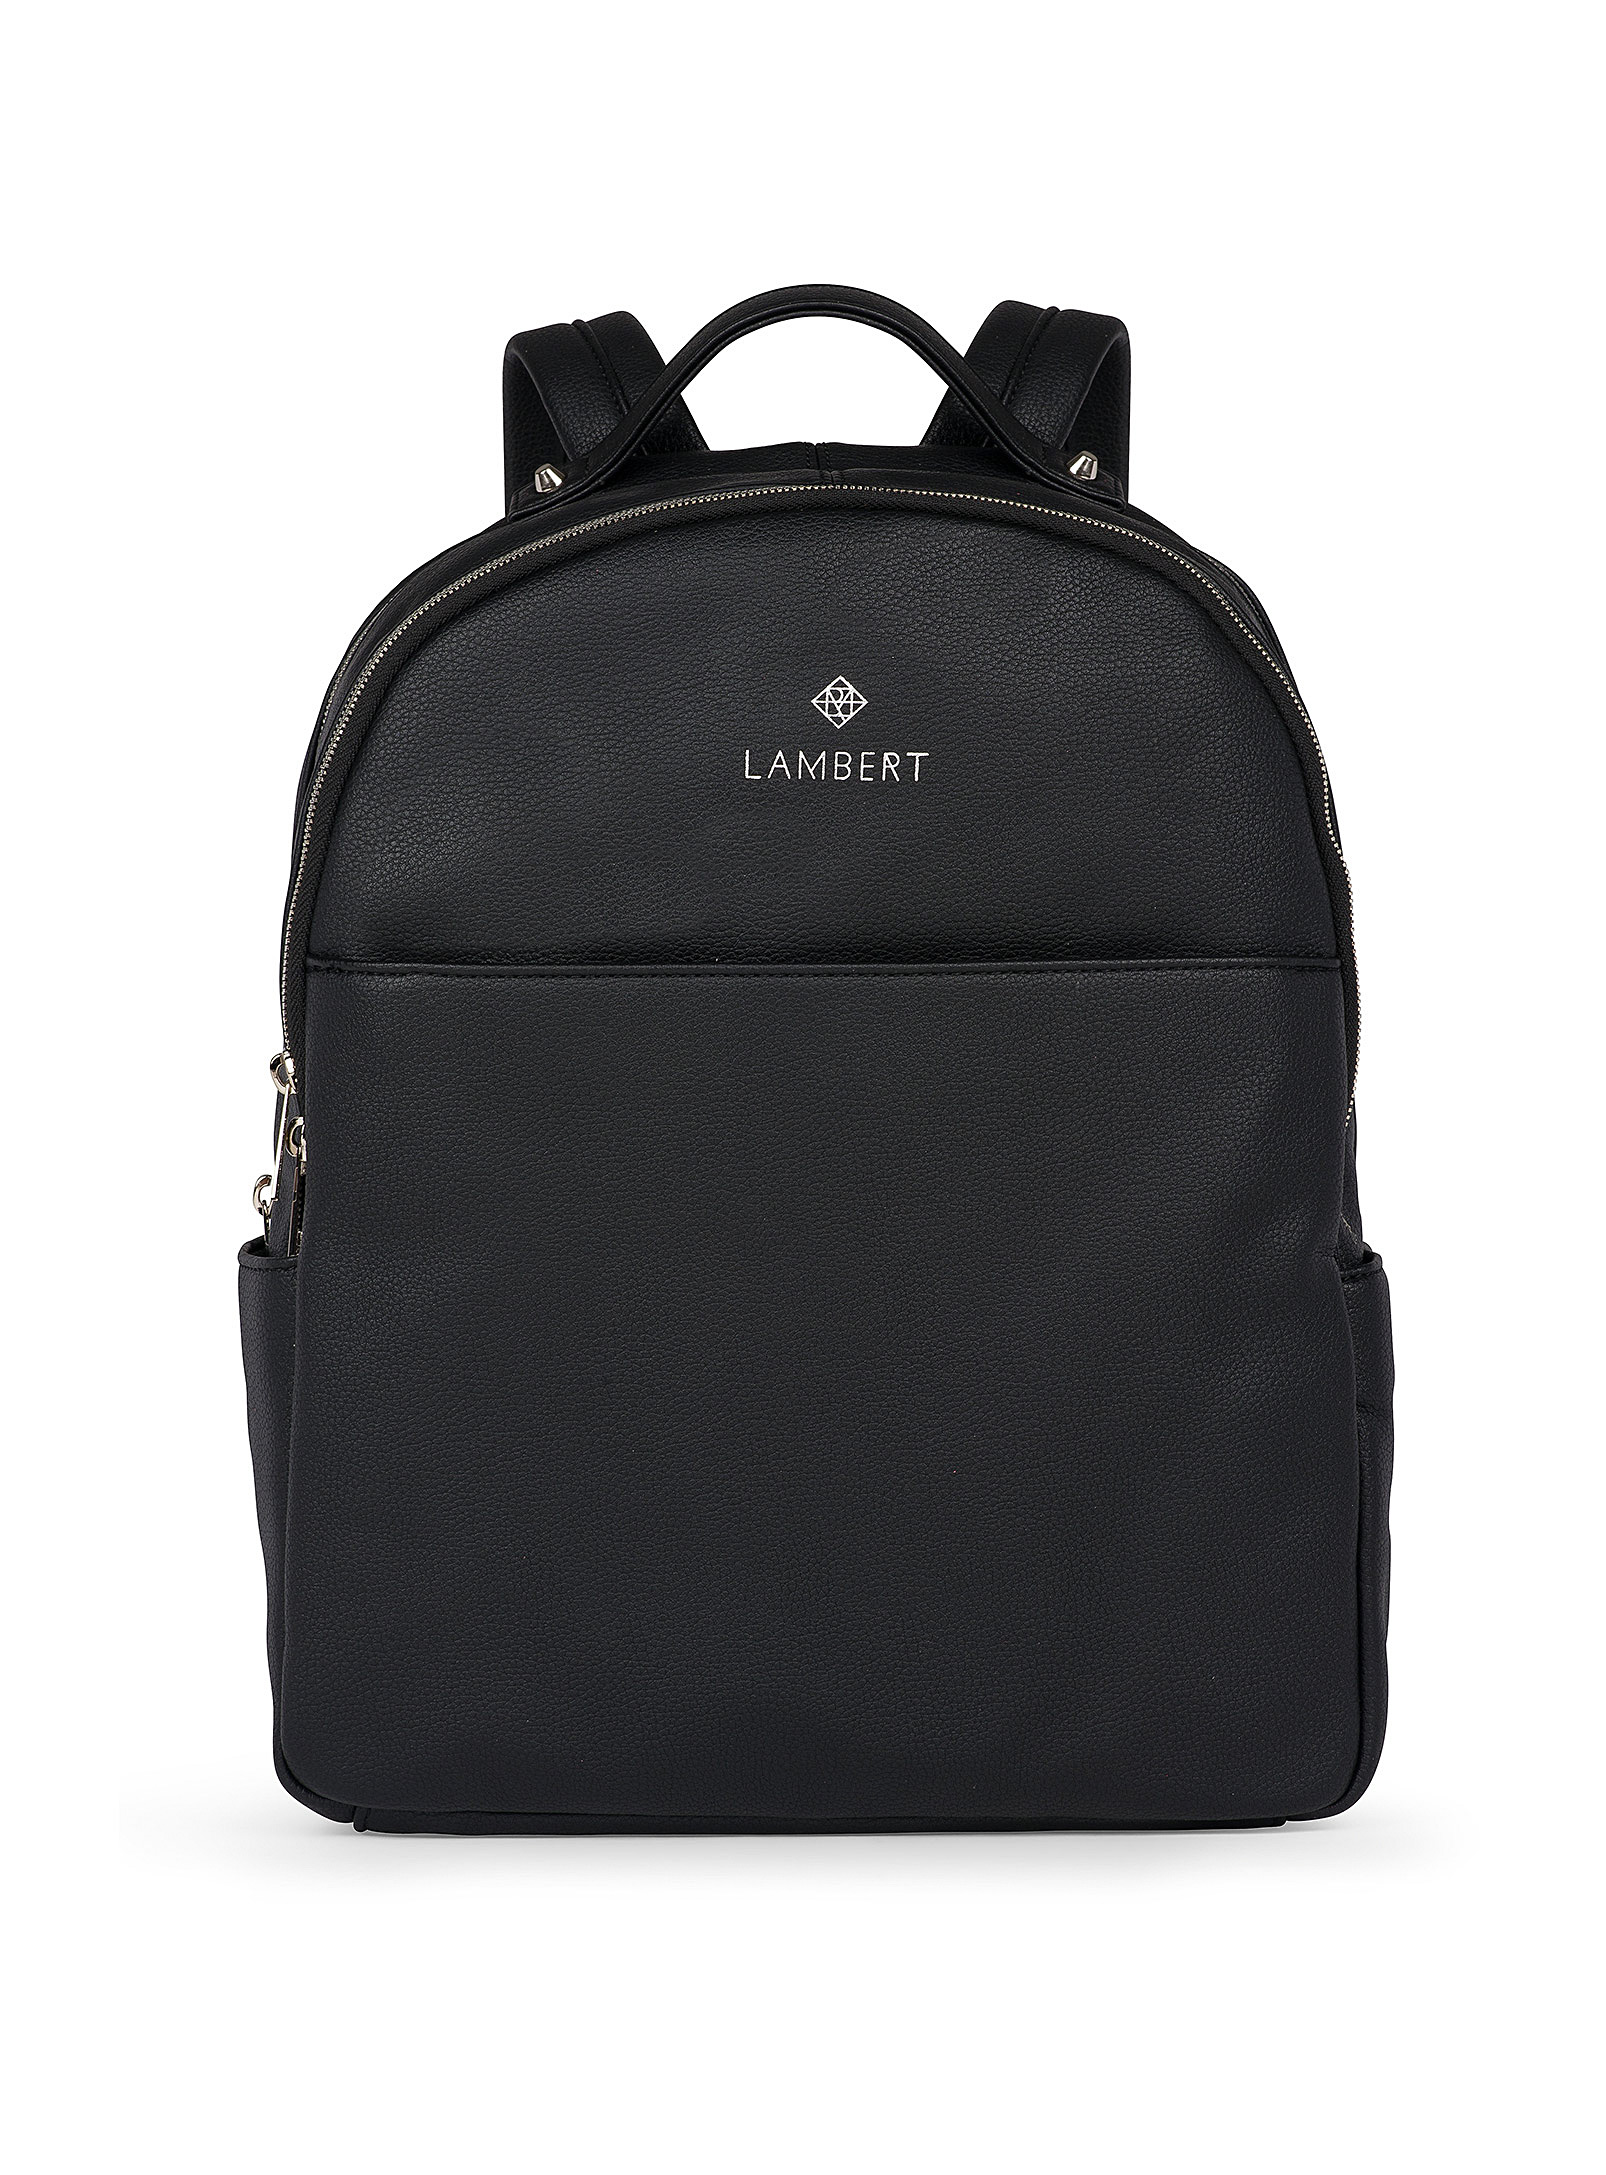 Lambert Charlotte Two-zip Backpack In Black